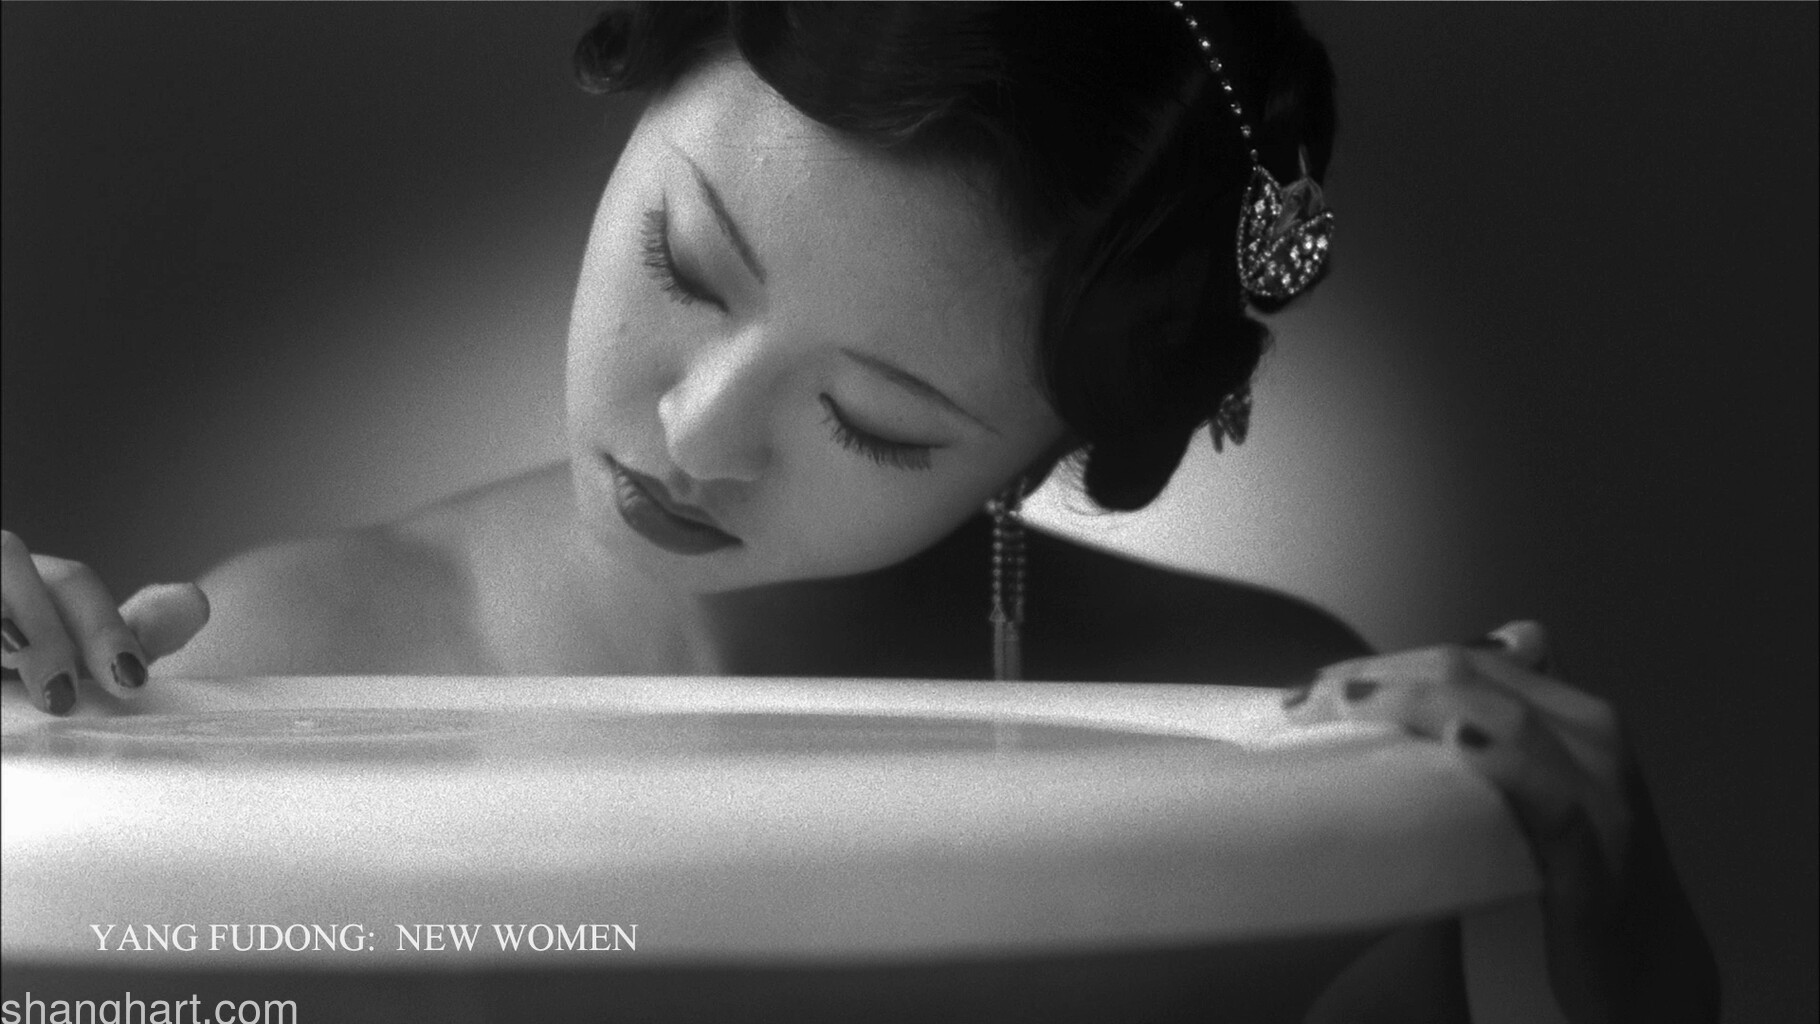 杨福东《新女性》(5屏影像装置) 截帧